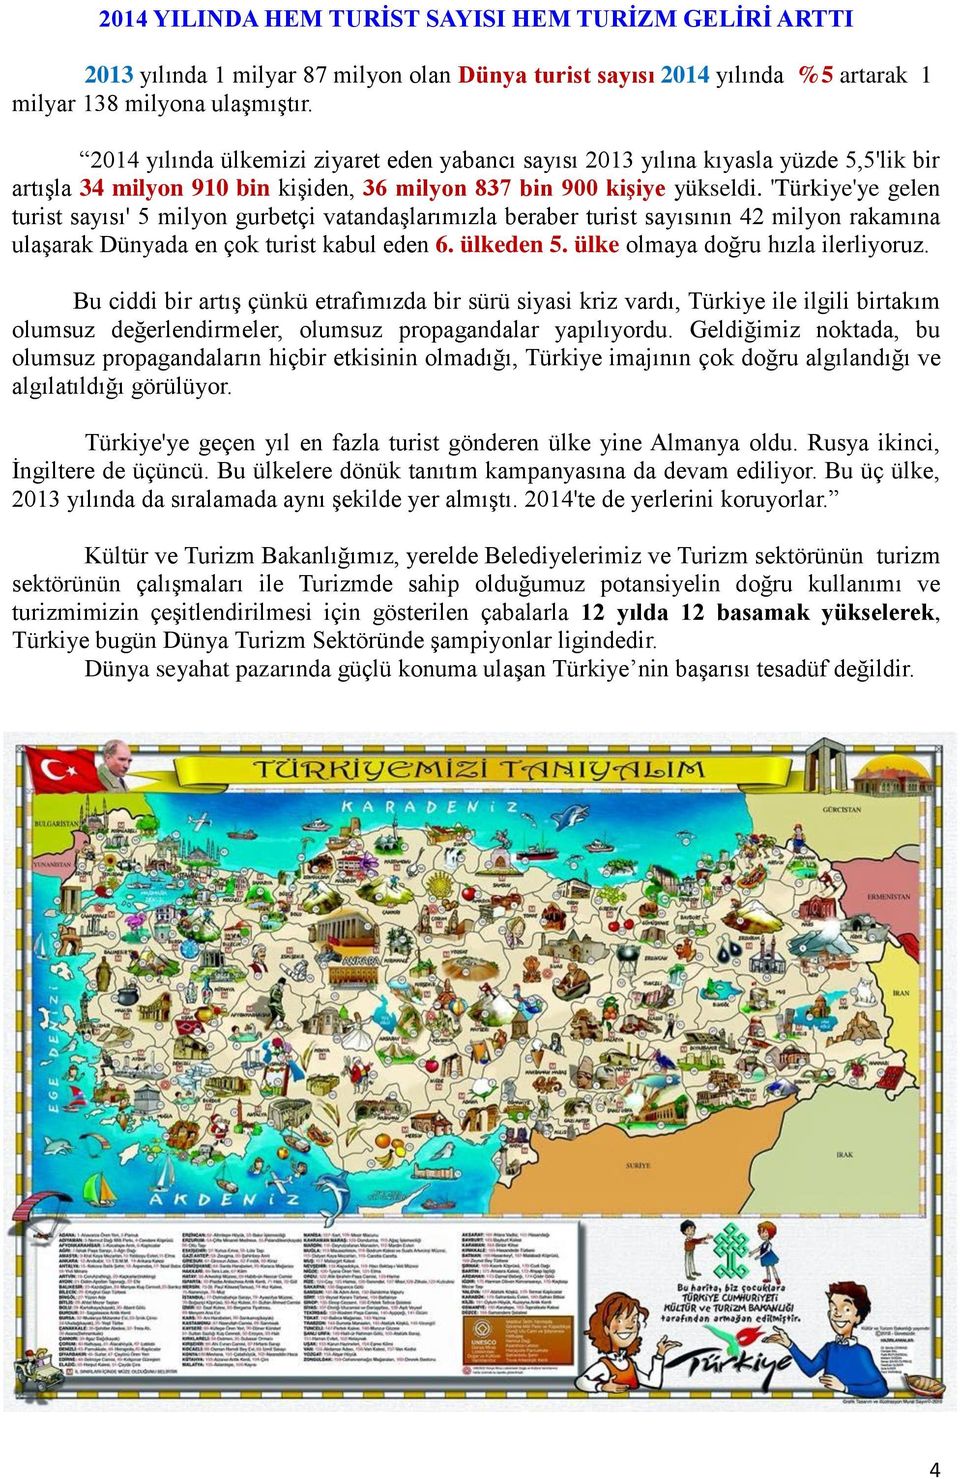 'Türkiye'ye gelen turist sayısı' 5 milyon gurbetçi vatandaģlarımızla beraber turist sayısının 42 milyon rakamına ulaģarak Dünyada en çok turist kabul eden 6. ülkeden 5.